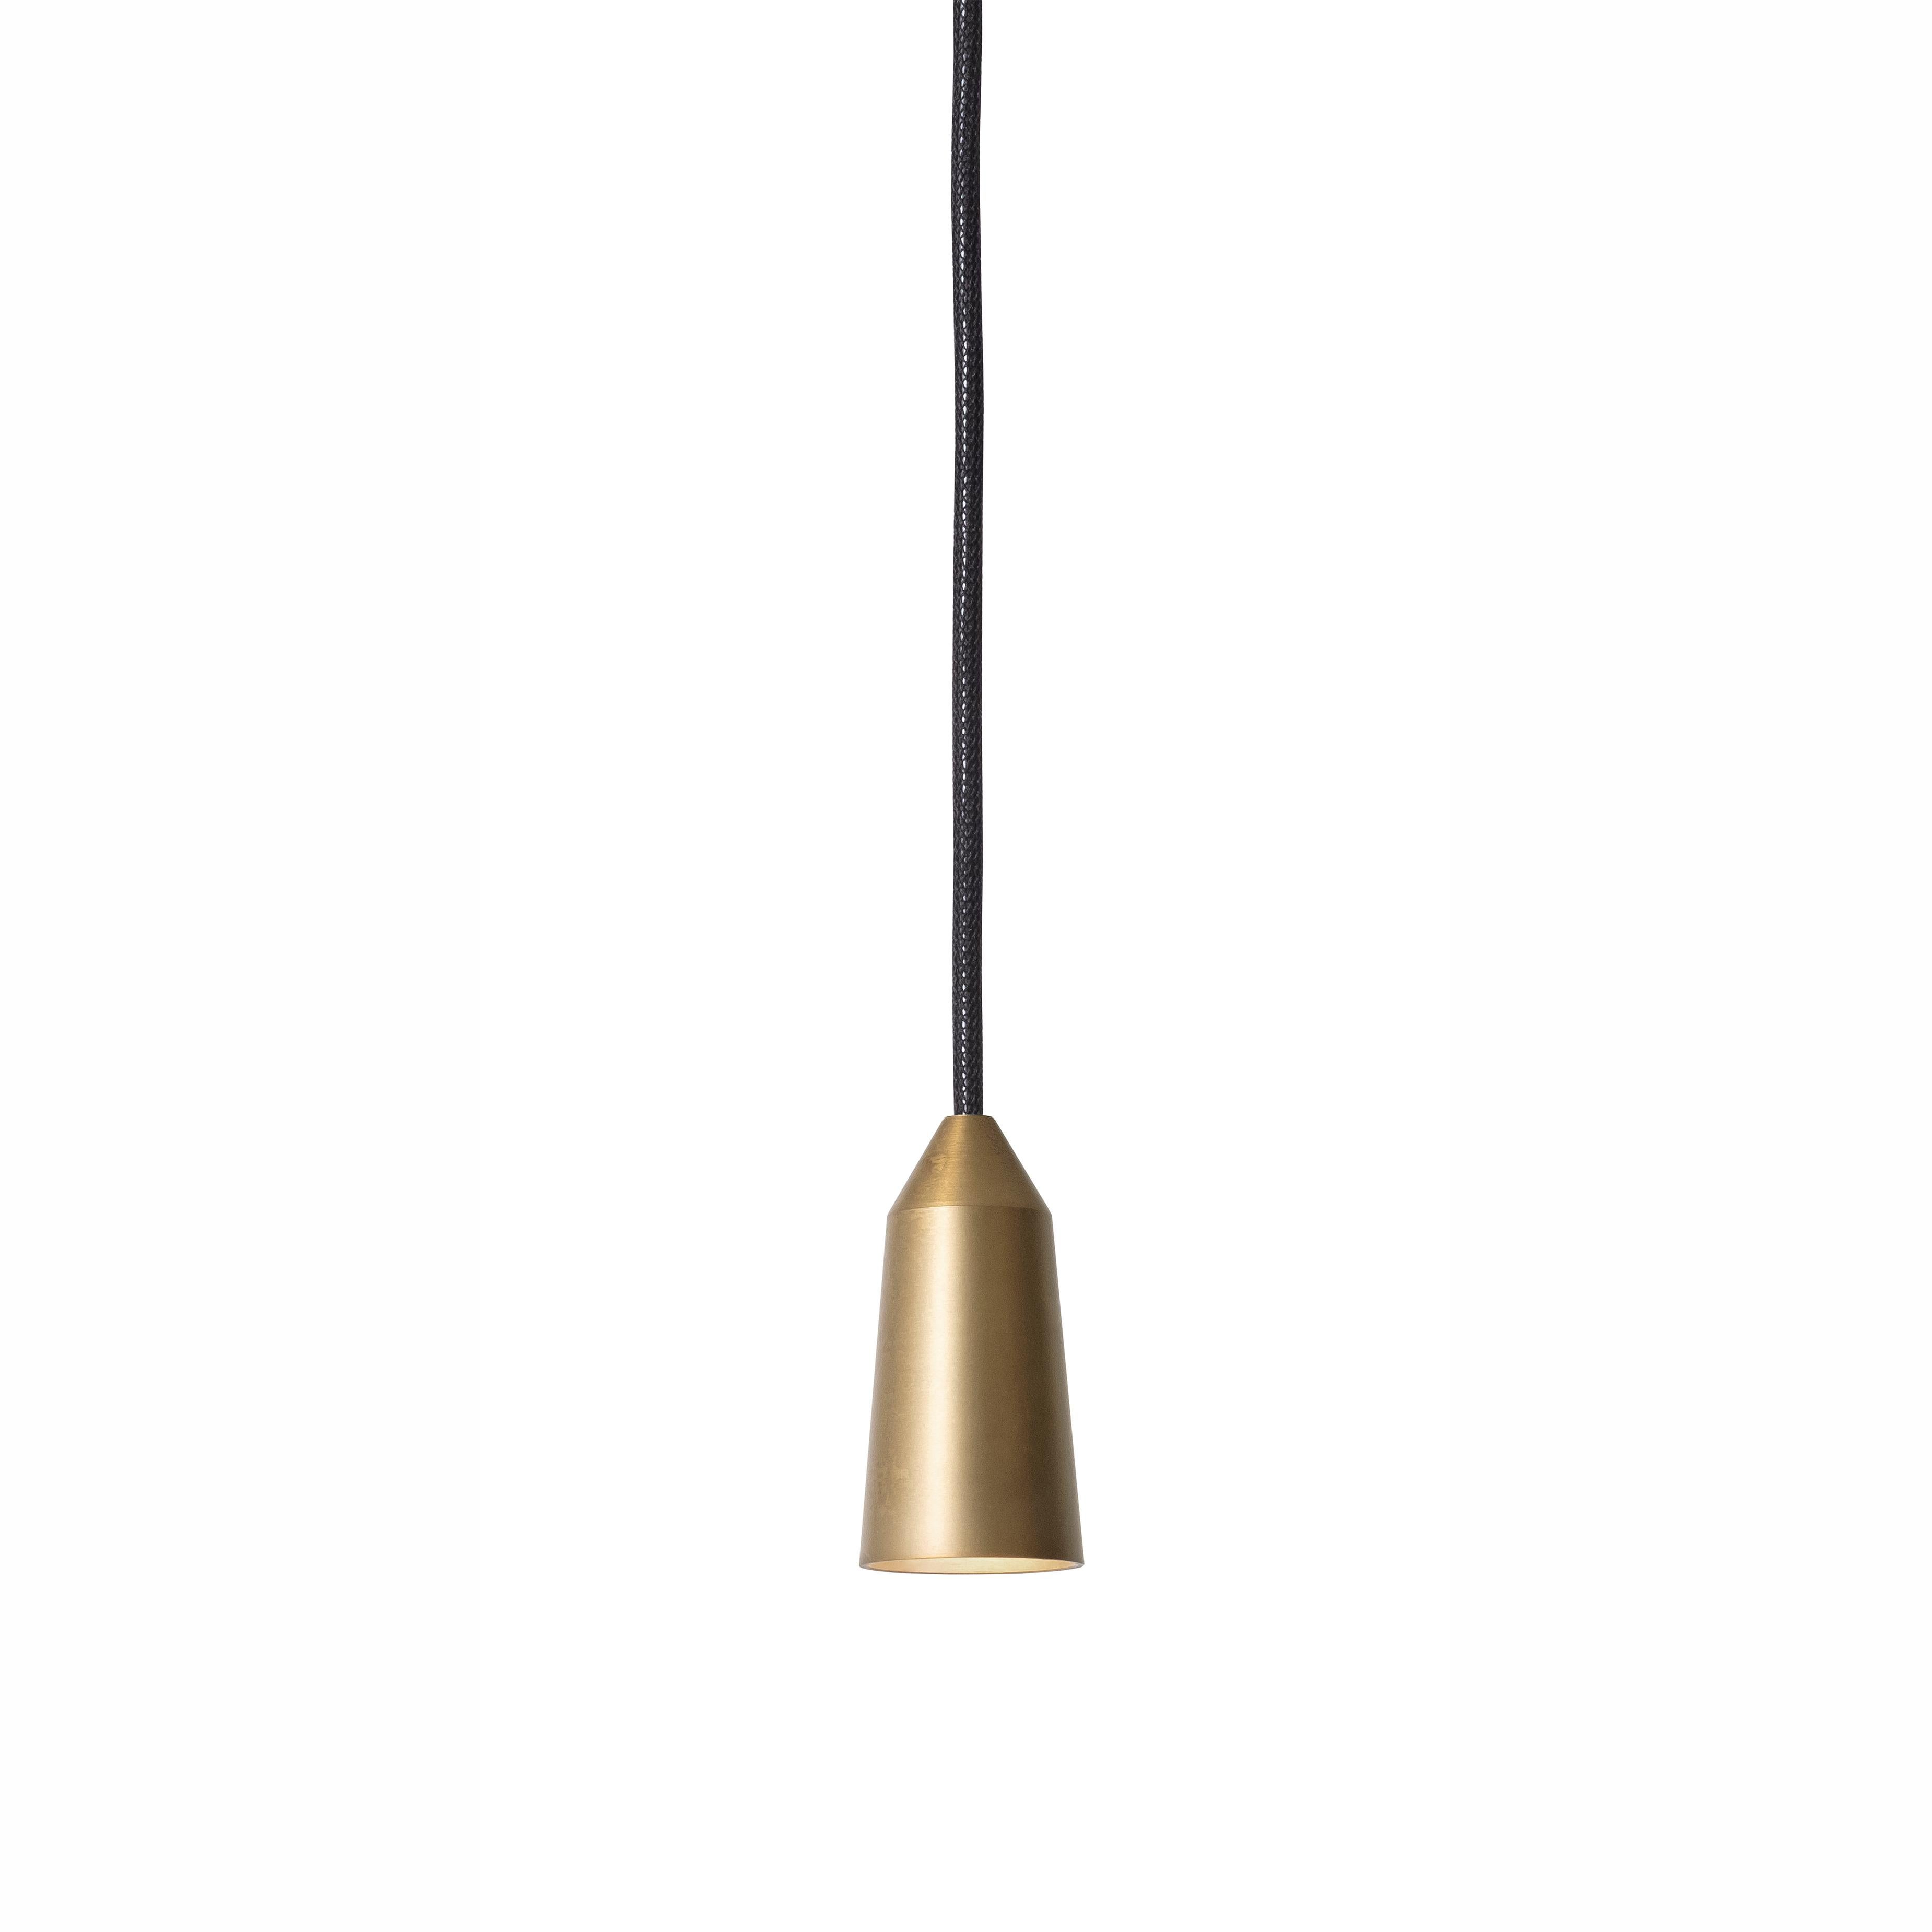 Plafonnier modèle 3492-6 Massiv Lamp by Henrik Tengler and manufactured by Konsthantverk.

La production des lampes, des appliques et des lampadaires est réalisée de manière artisanale avec les mêmes matériaux et techniques que les premiers